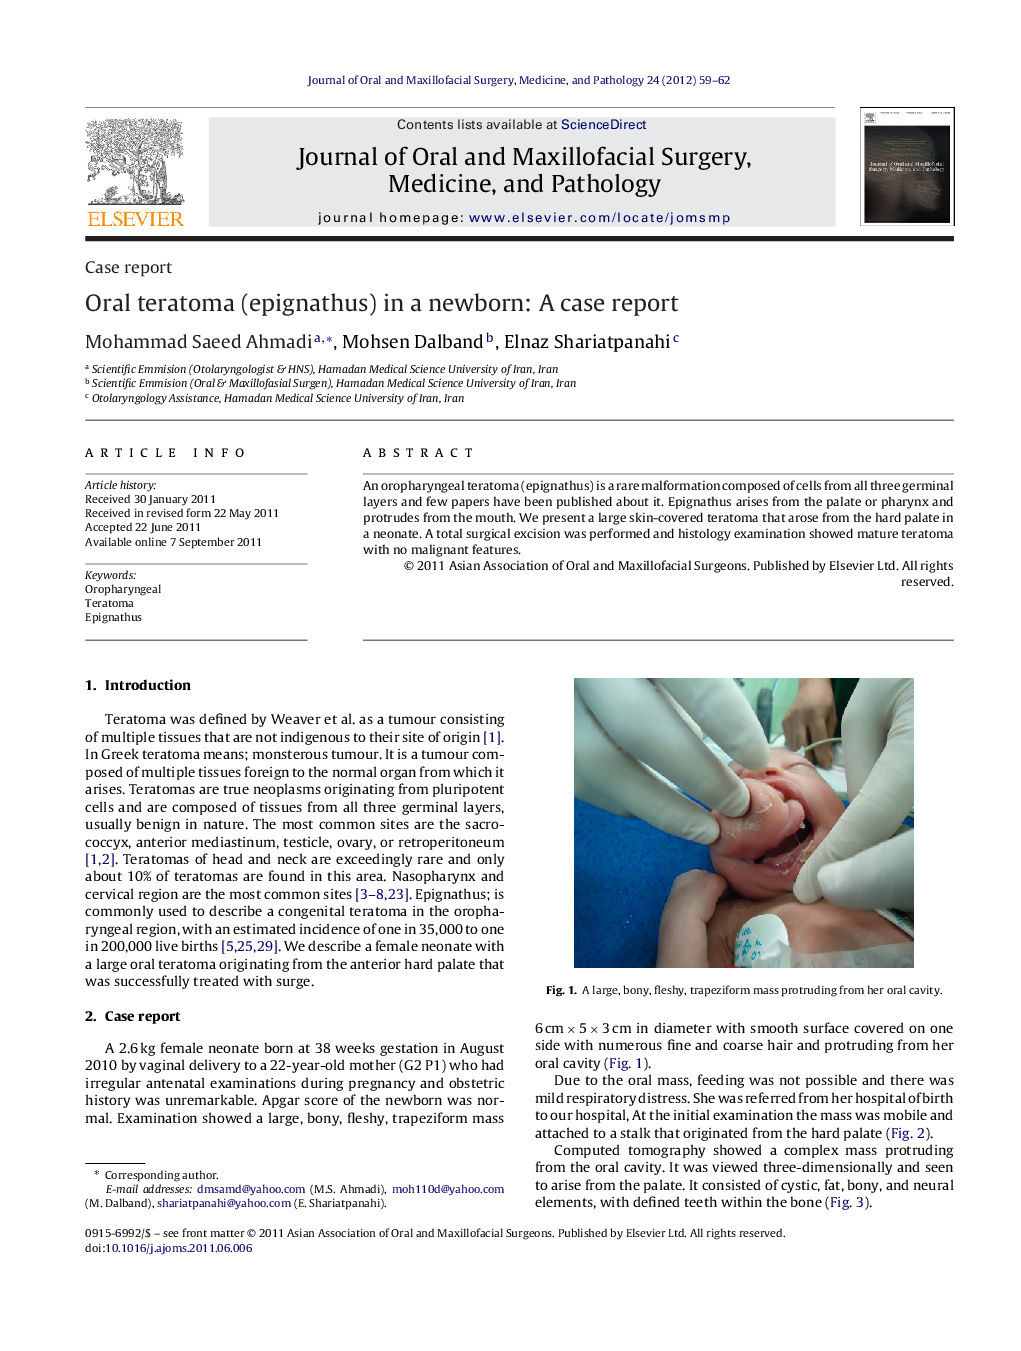 Oral teratoma (epignathus) in a newborn: A case report